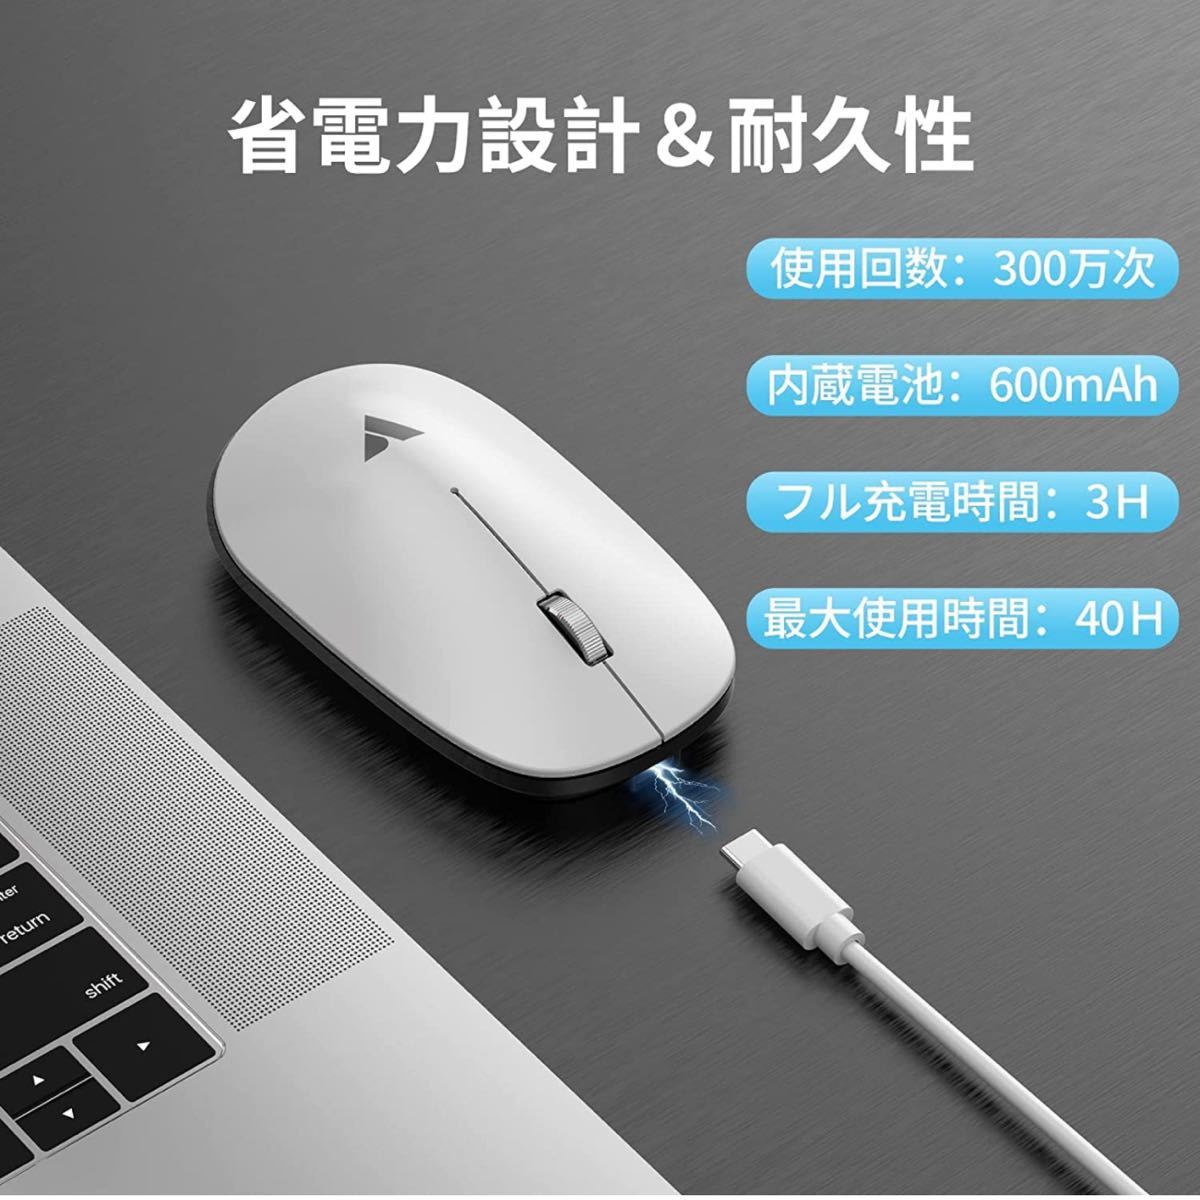 マウス ワイヤレス 充電式 静音 無線 3ボタン 3DPIモード 高精度 左右利き手 薄型 小型 軽量 Mac/iPad 